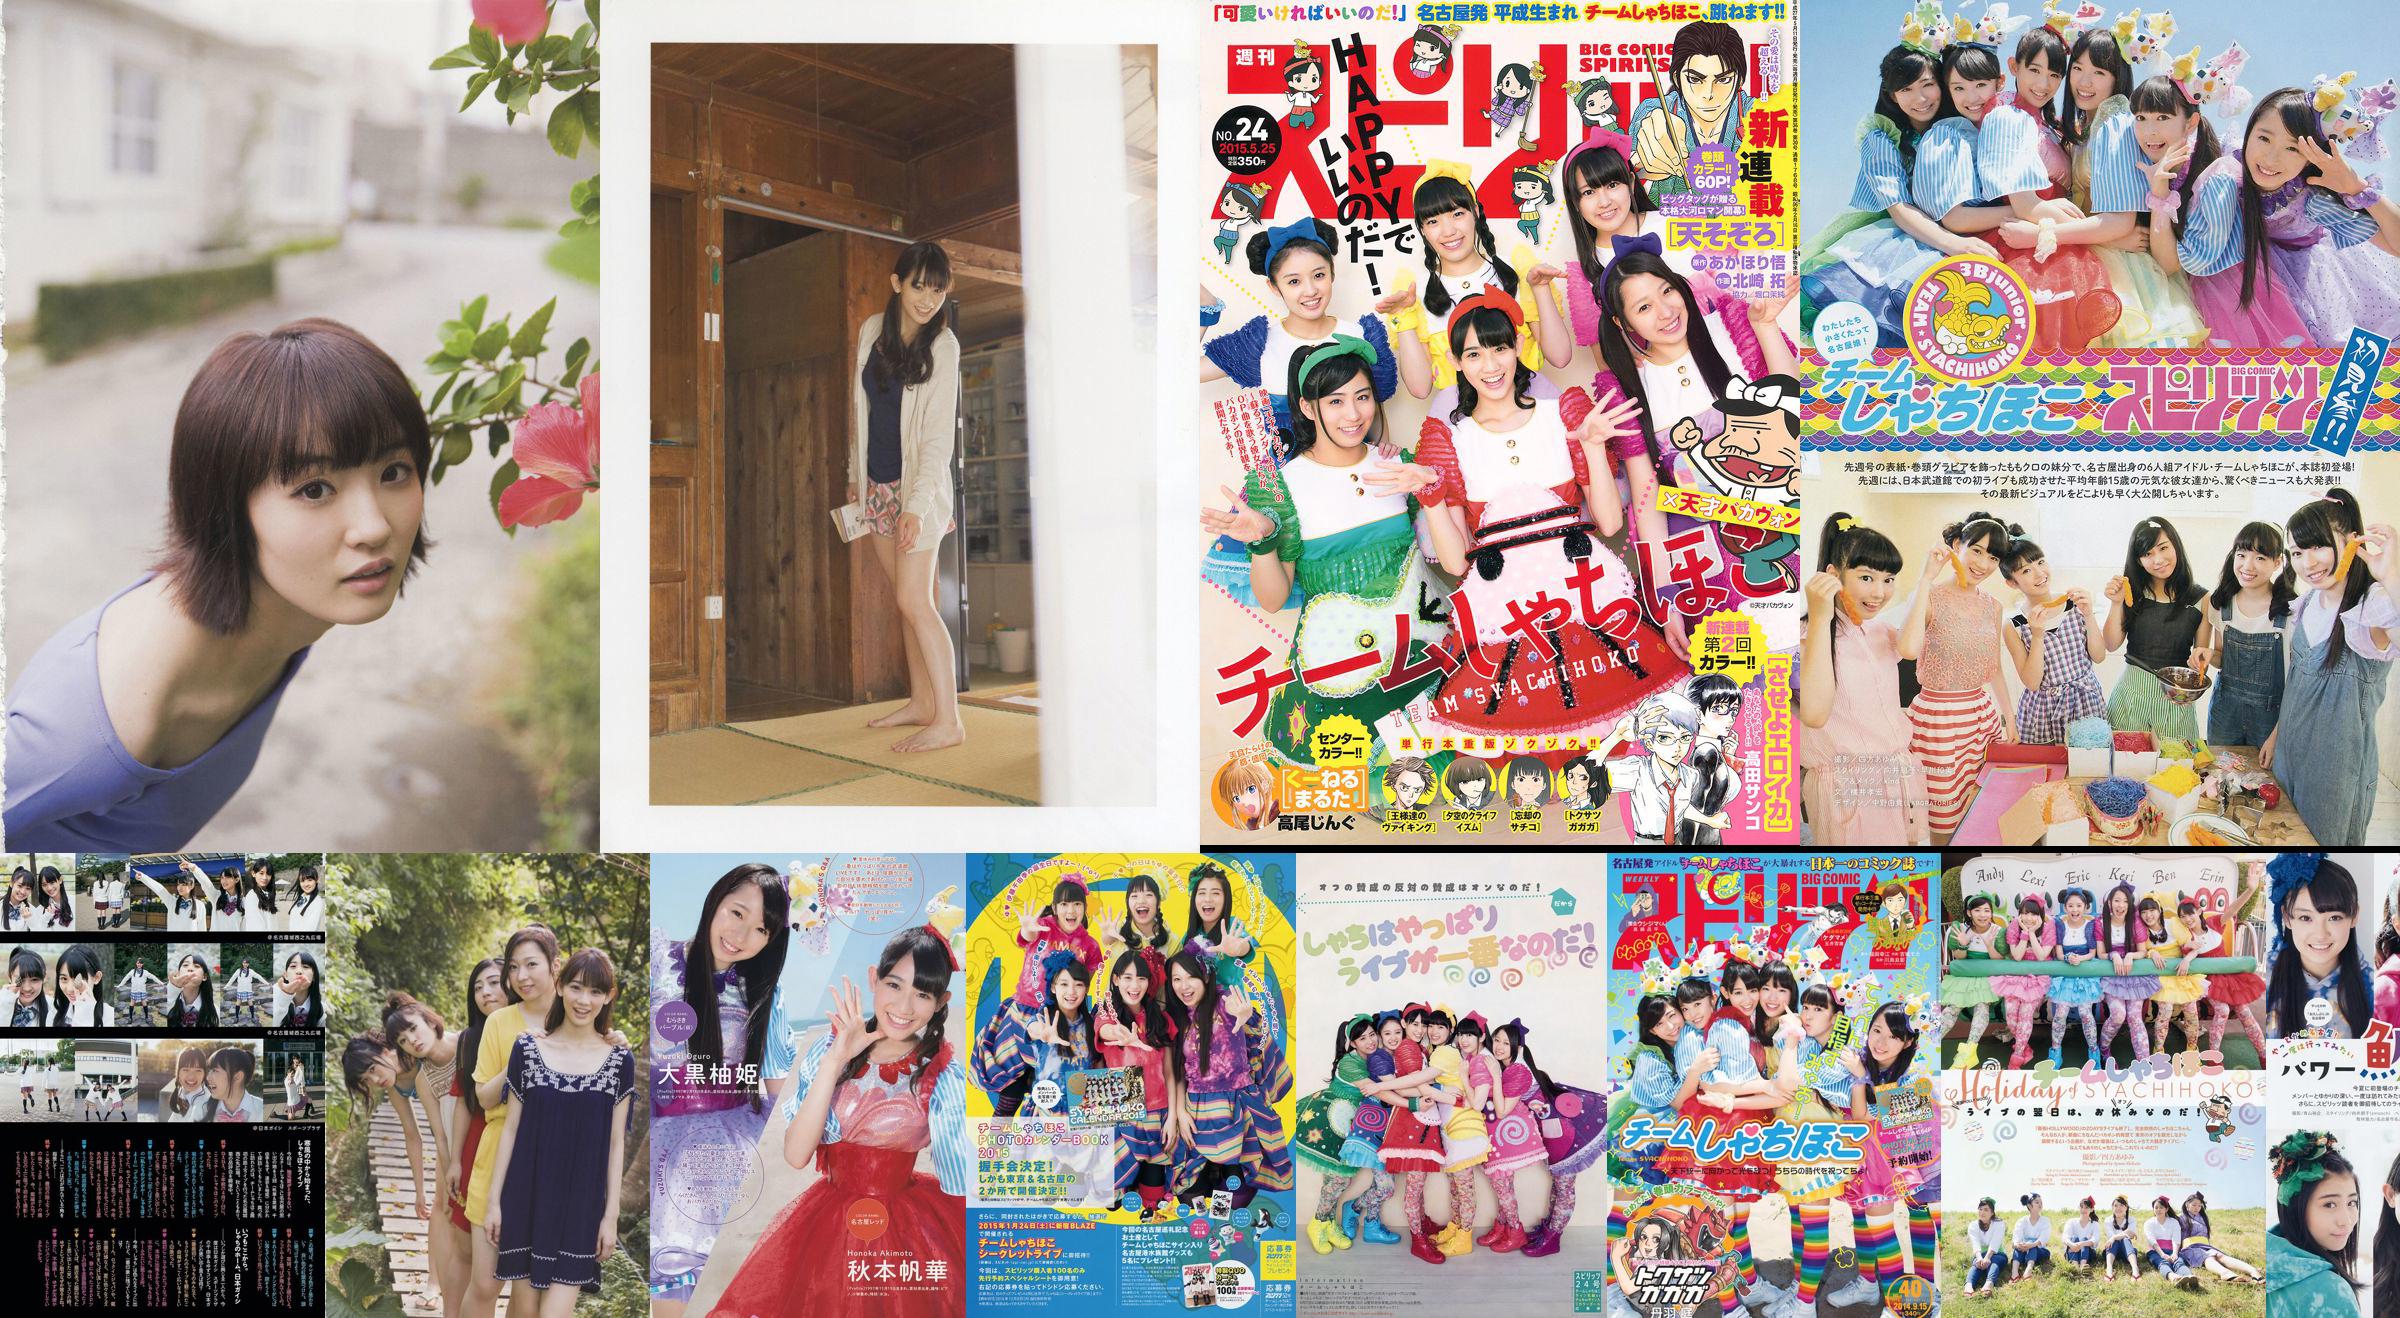 [Weekly Big Comic Spirits] チームしゃちほこ 2014 No.40 Photo Magazine No.5e322a Seite 2